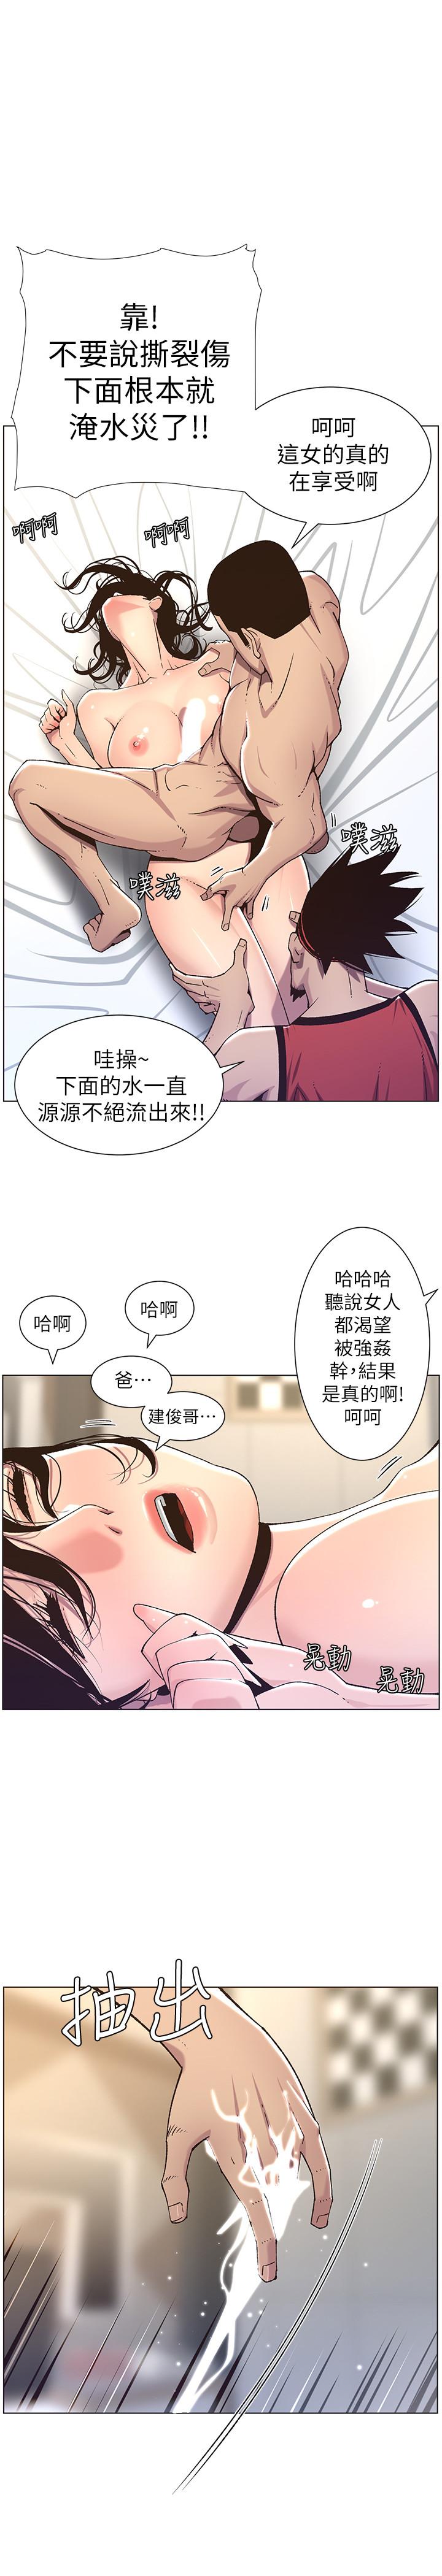 韩国污漫画 姊妹與繼父 第61话-妍希在家人与慾望间做选择 1